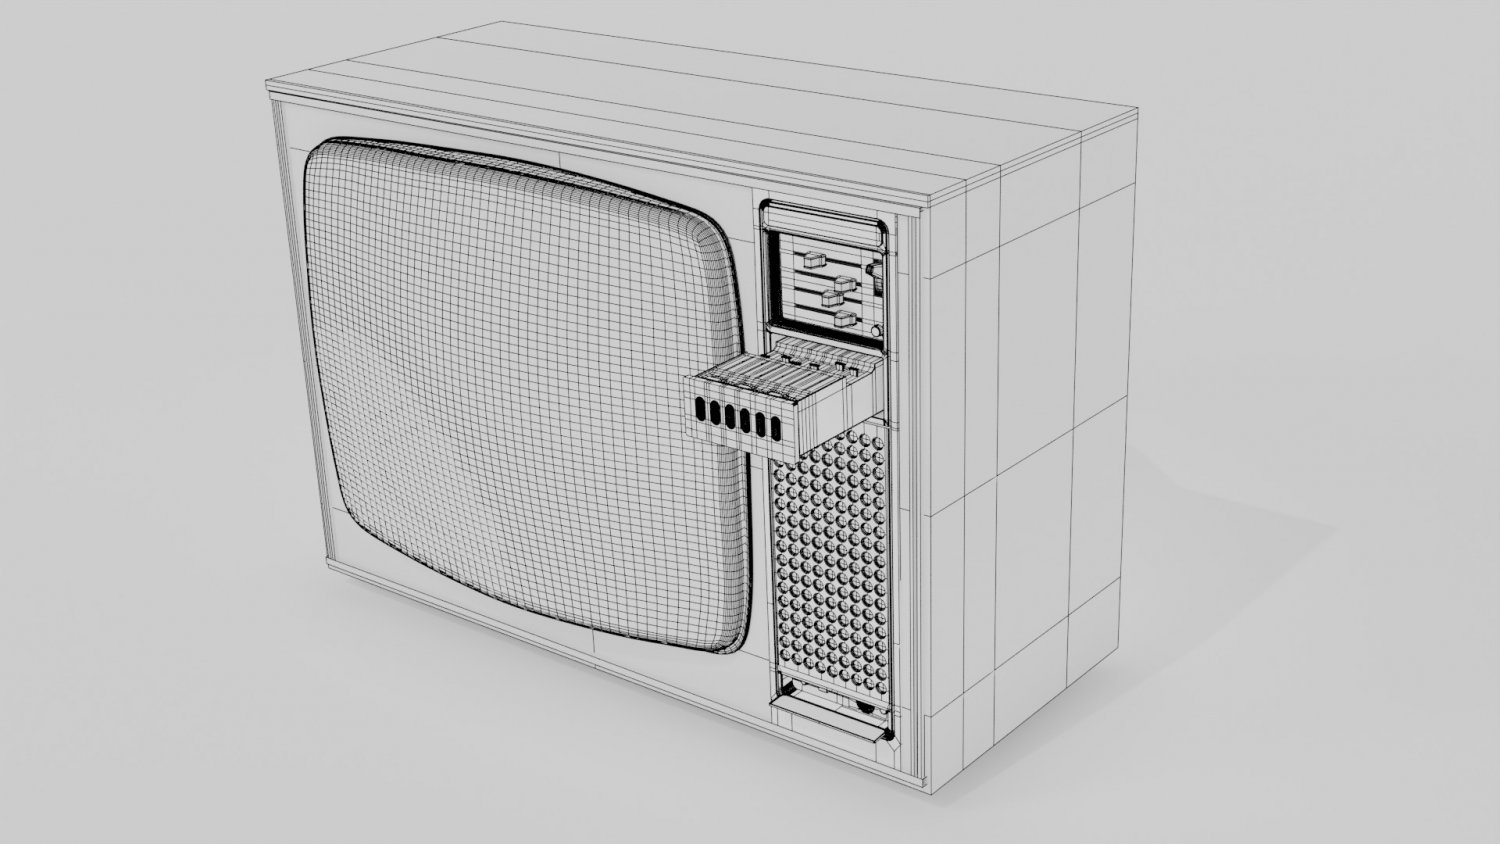 Tv old 2. Телевизор Delta. Телевизор Delta кнопочный. Old TV 3d model. Телевизор Delta СССР.